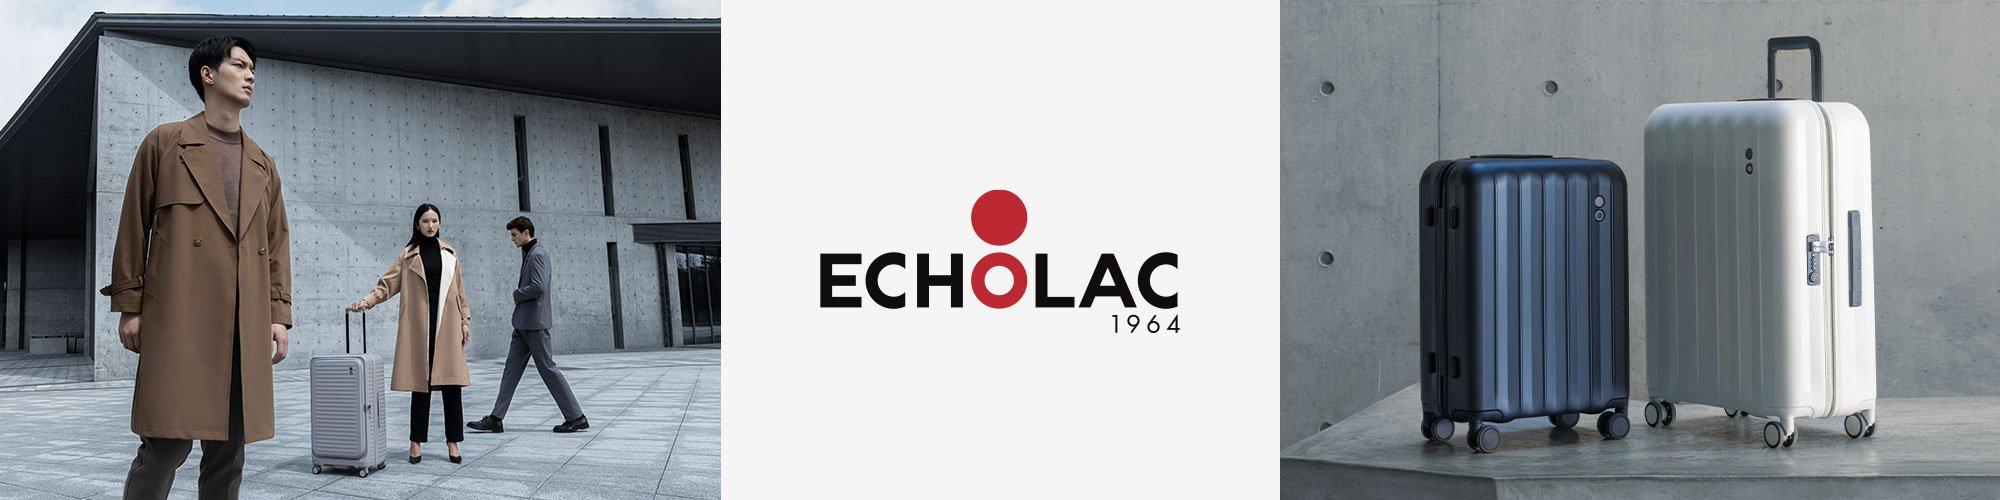 Echolac